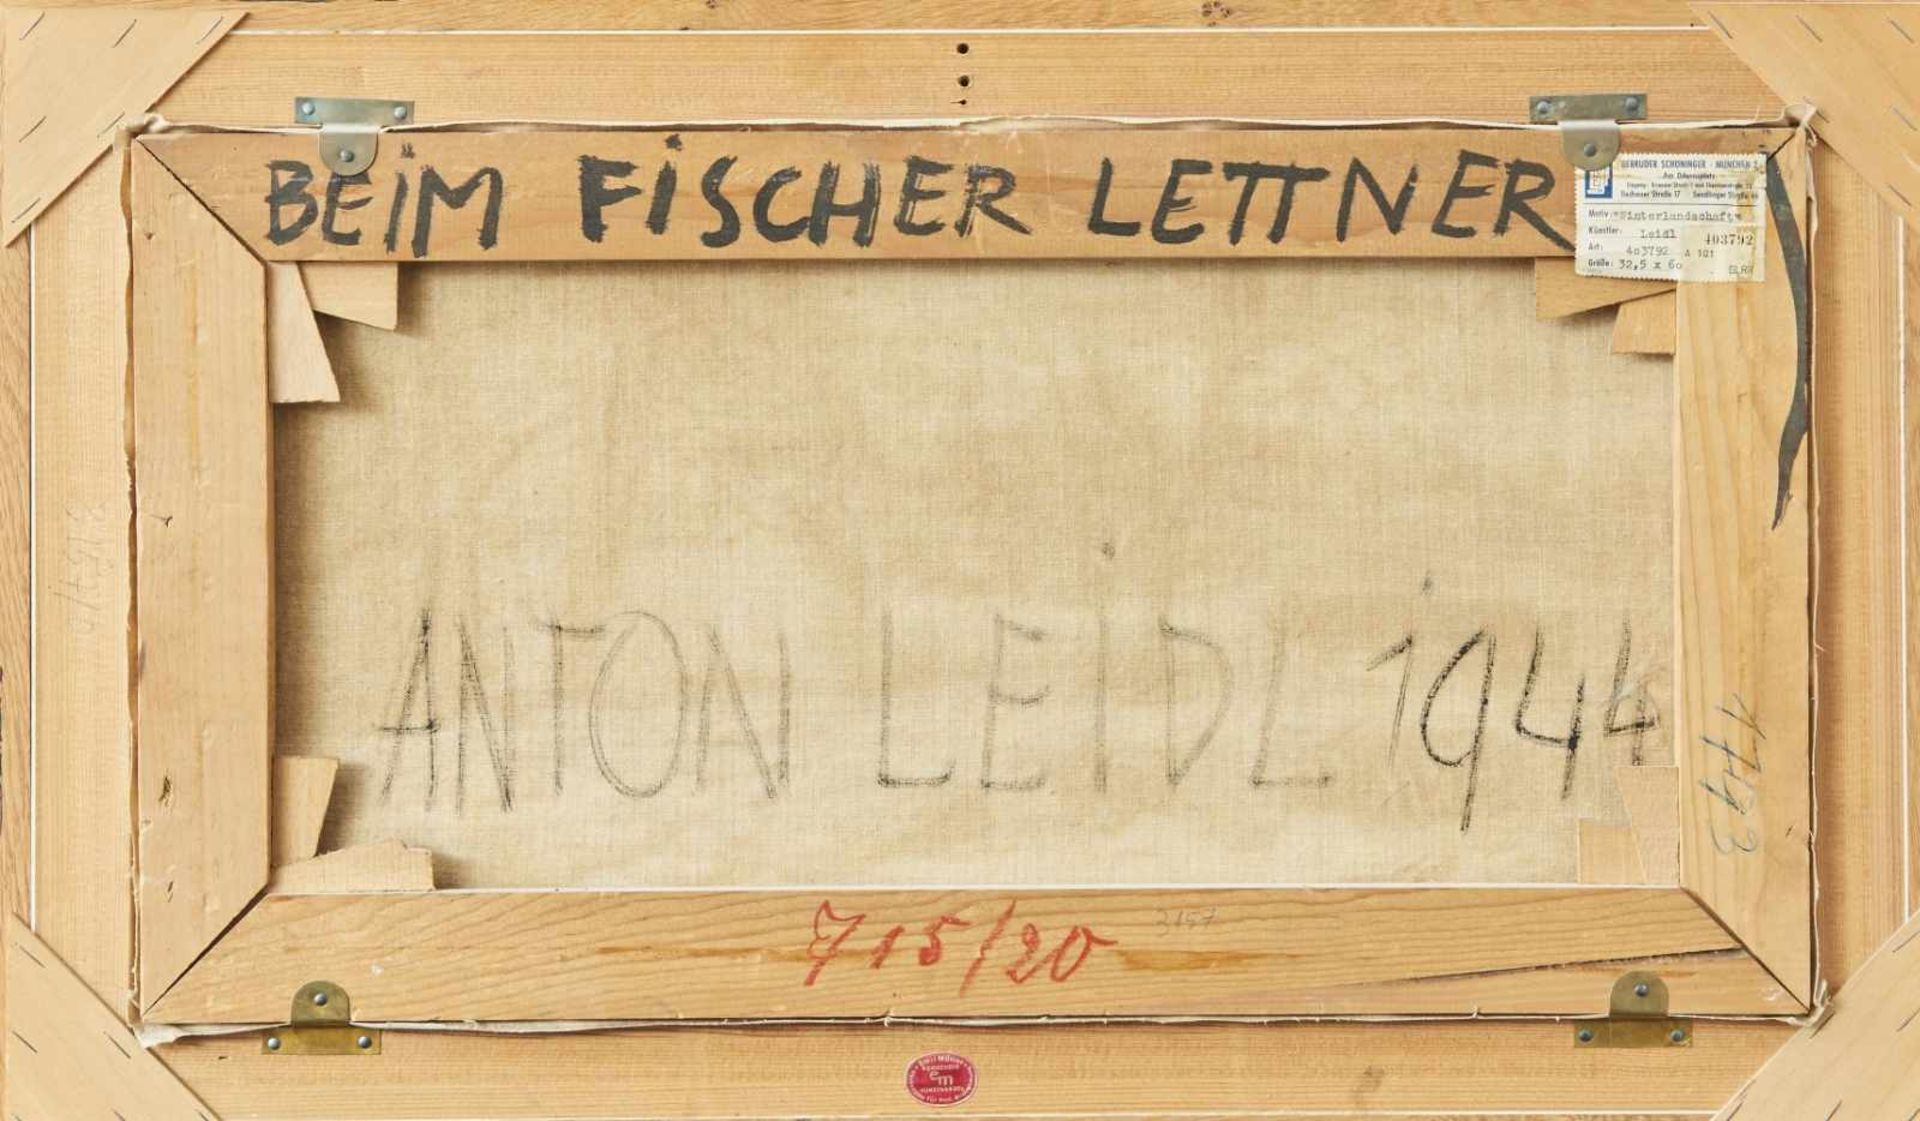 Beim Fischer LettnerAnton Leidl, (1900-1976)Rechts unten signiert 'Anton Leidl', Öl auf Leinwand, - Bild 3 aus 3